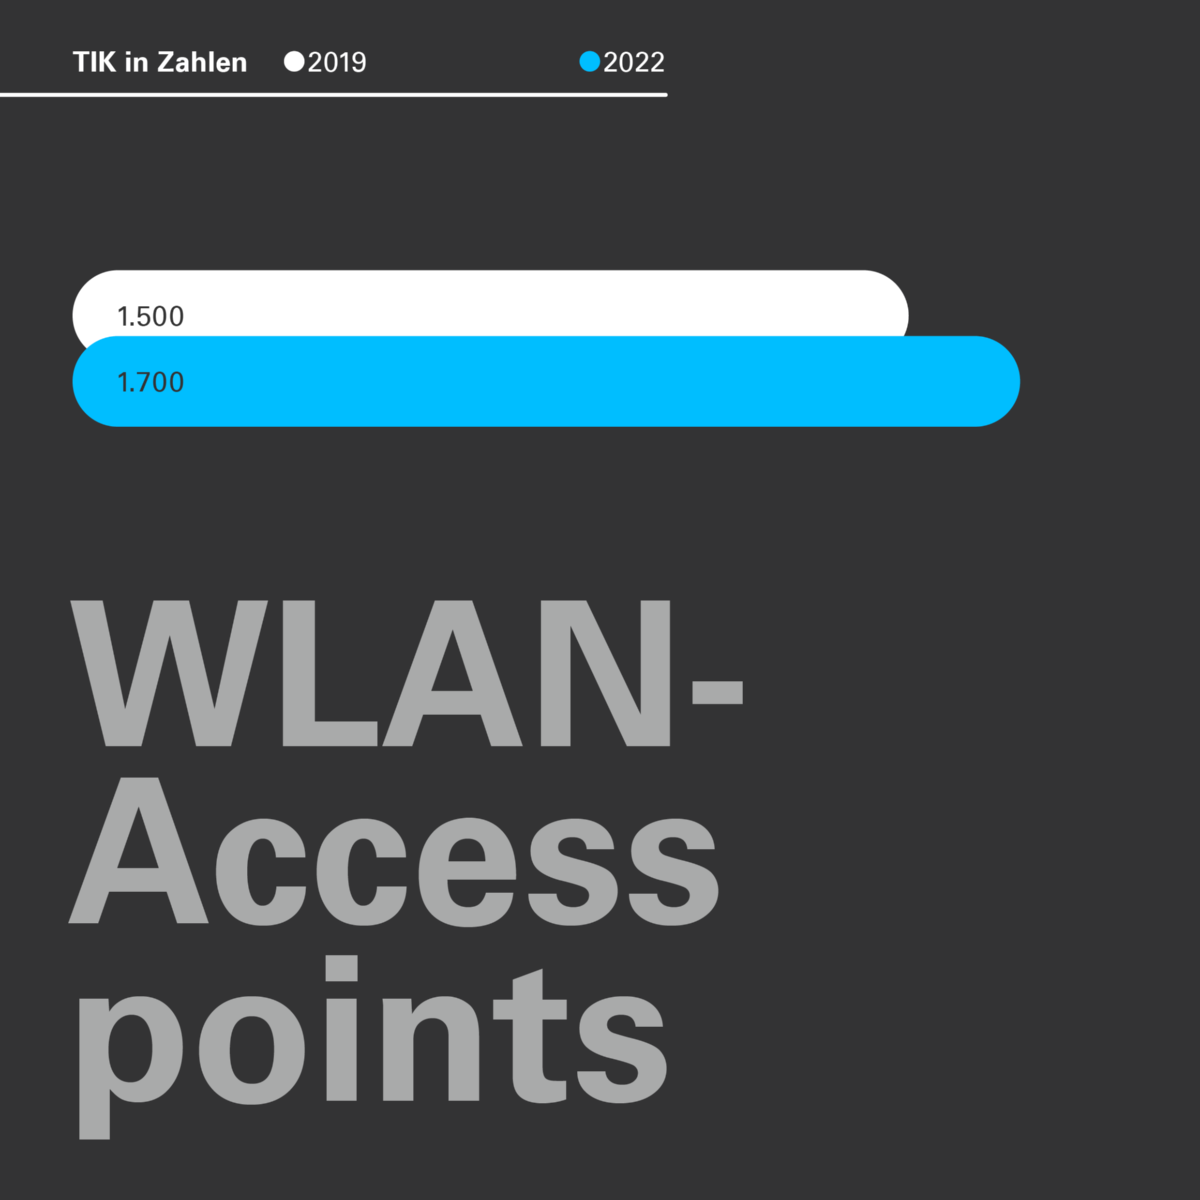 Die Grafik vergleicht die Anzahl der WLAN-Accesspoints 2019 mit 2022.